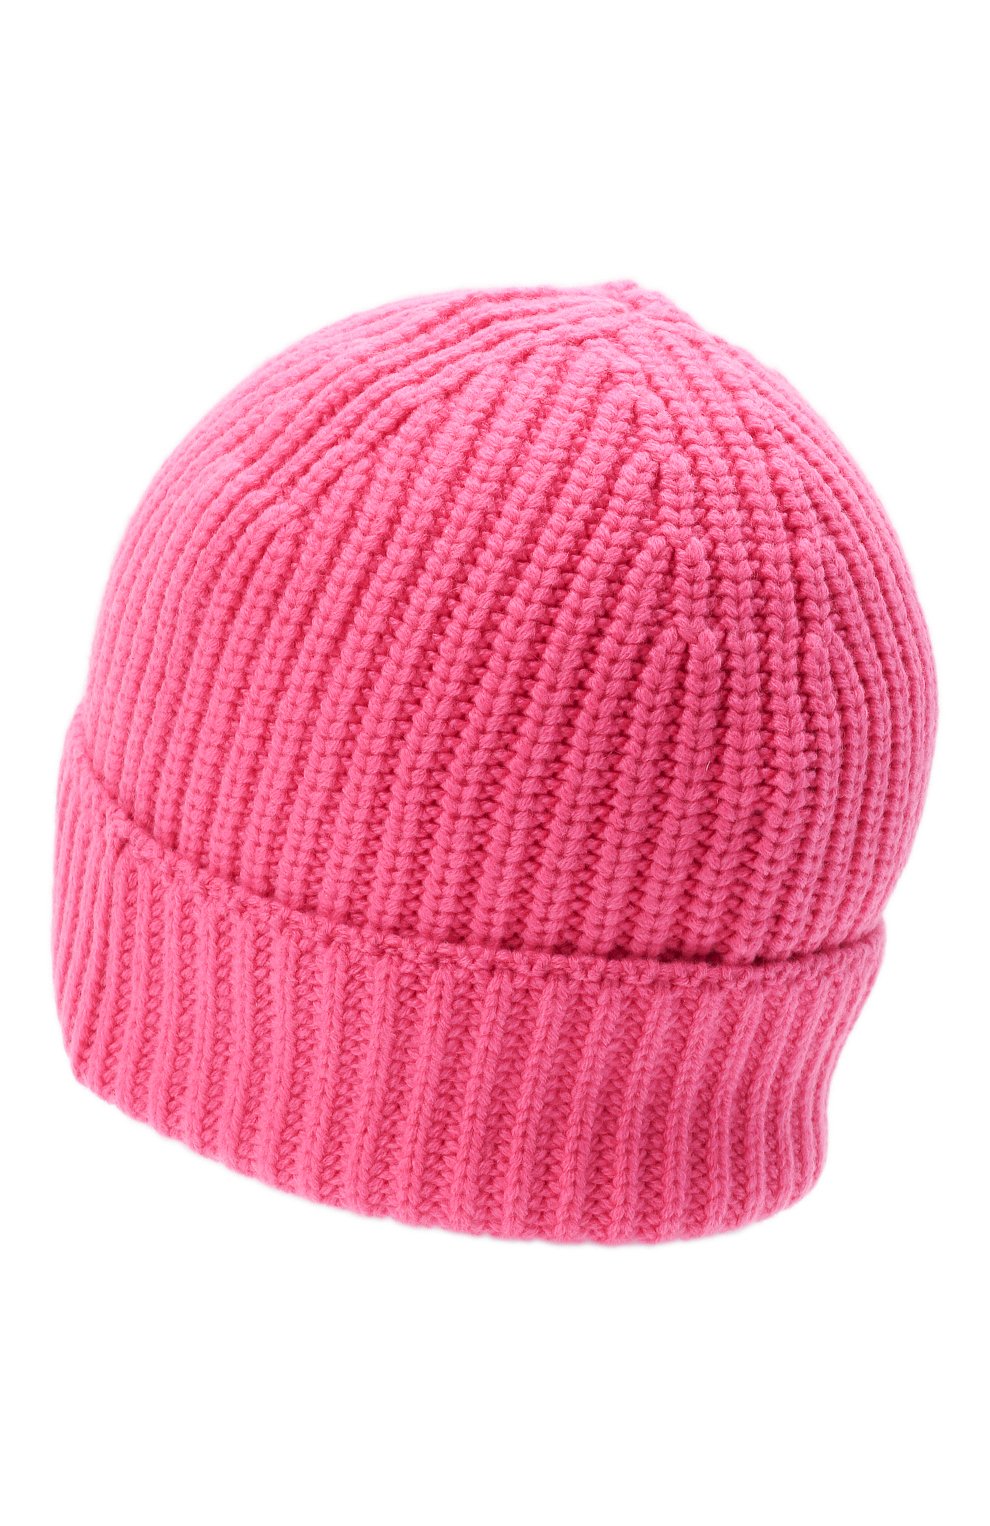 Женская шапка из шерсти и кашемира MONCLER розового цвета, арт. G2-093-3B000-01-M1130 | Фото 3 (Материал: Текстиль, Кашемир, Шерсть)